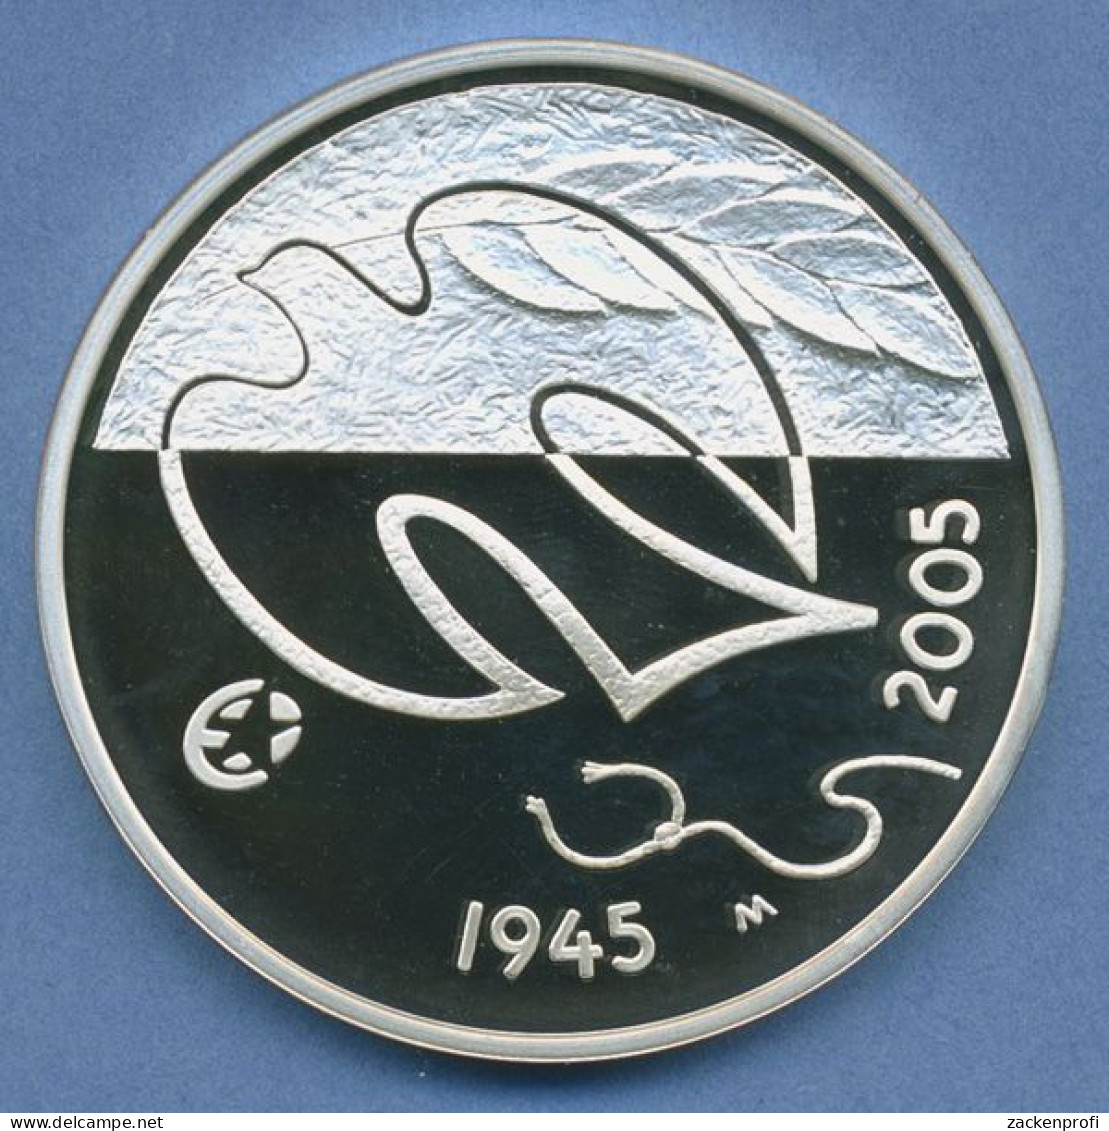 Finnland 10 Euro 2005 Frieden In Europa Friedenstaube, Silber, KM 120 PP (m4458) - Finland